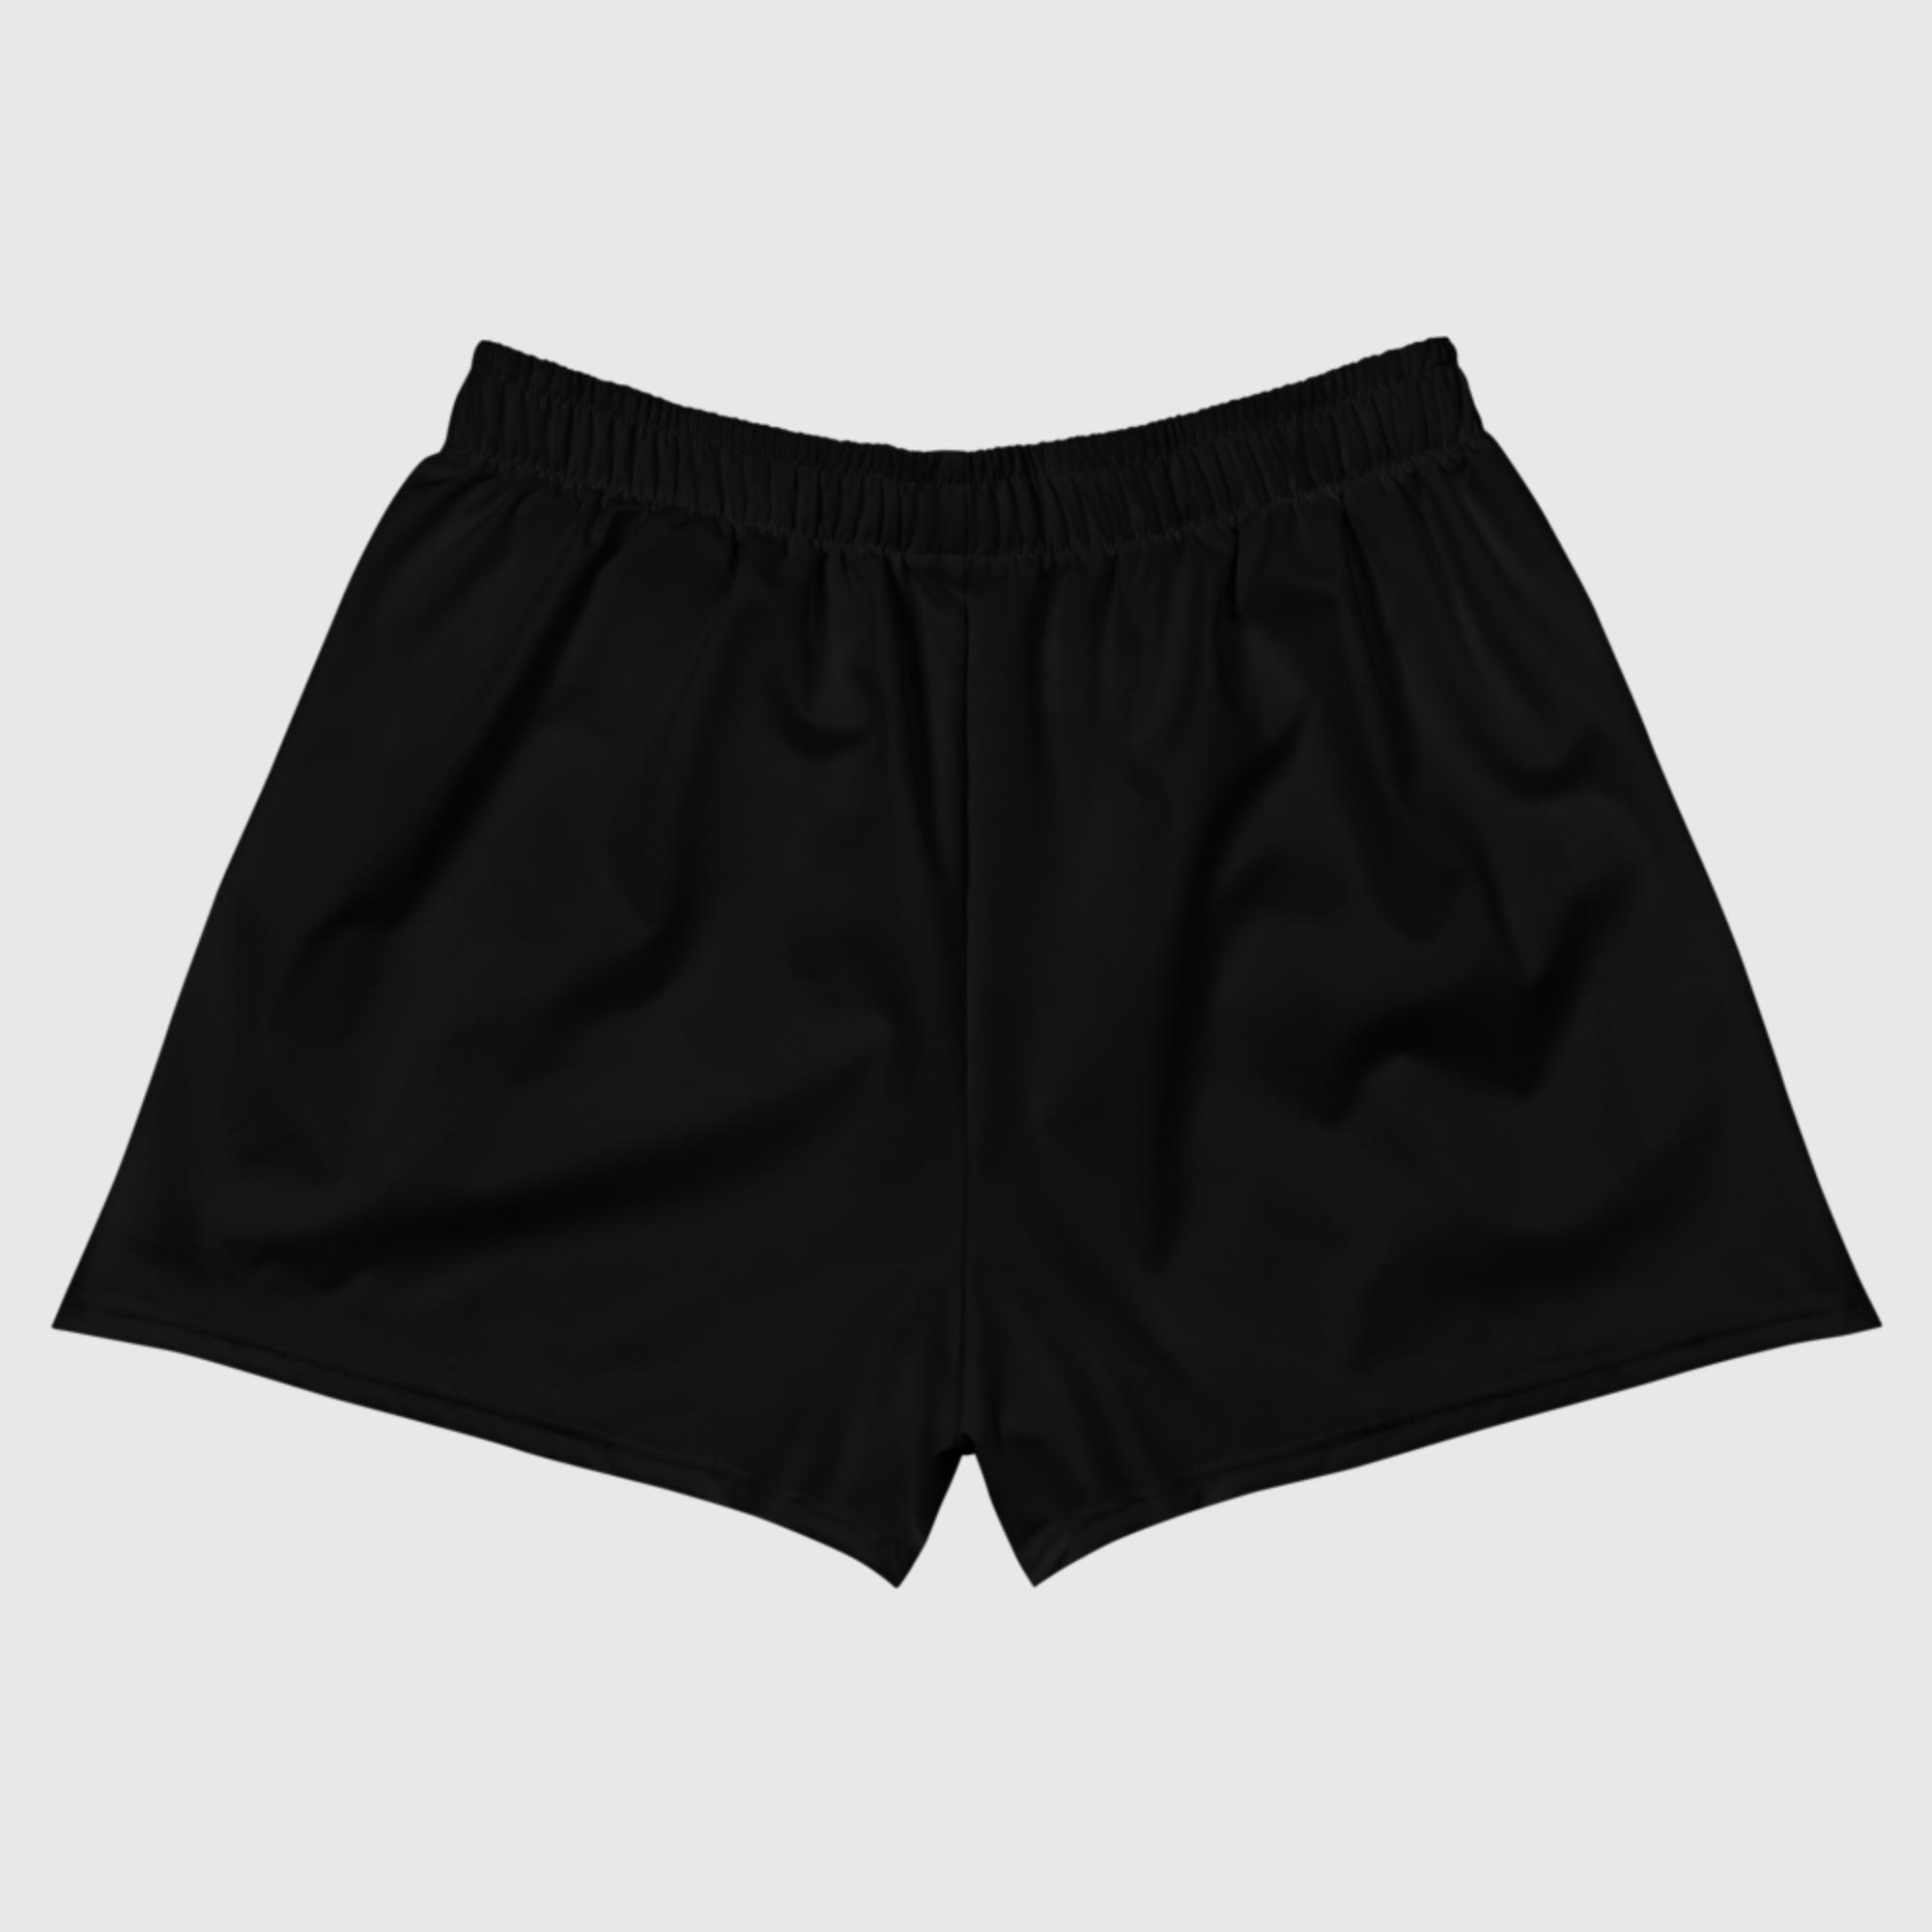 Women's Athletic Short Shorts - Black - Sunset Harbor Clothing